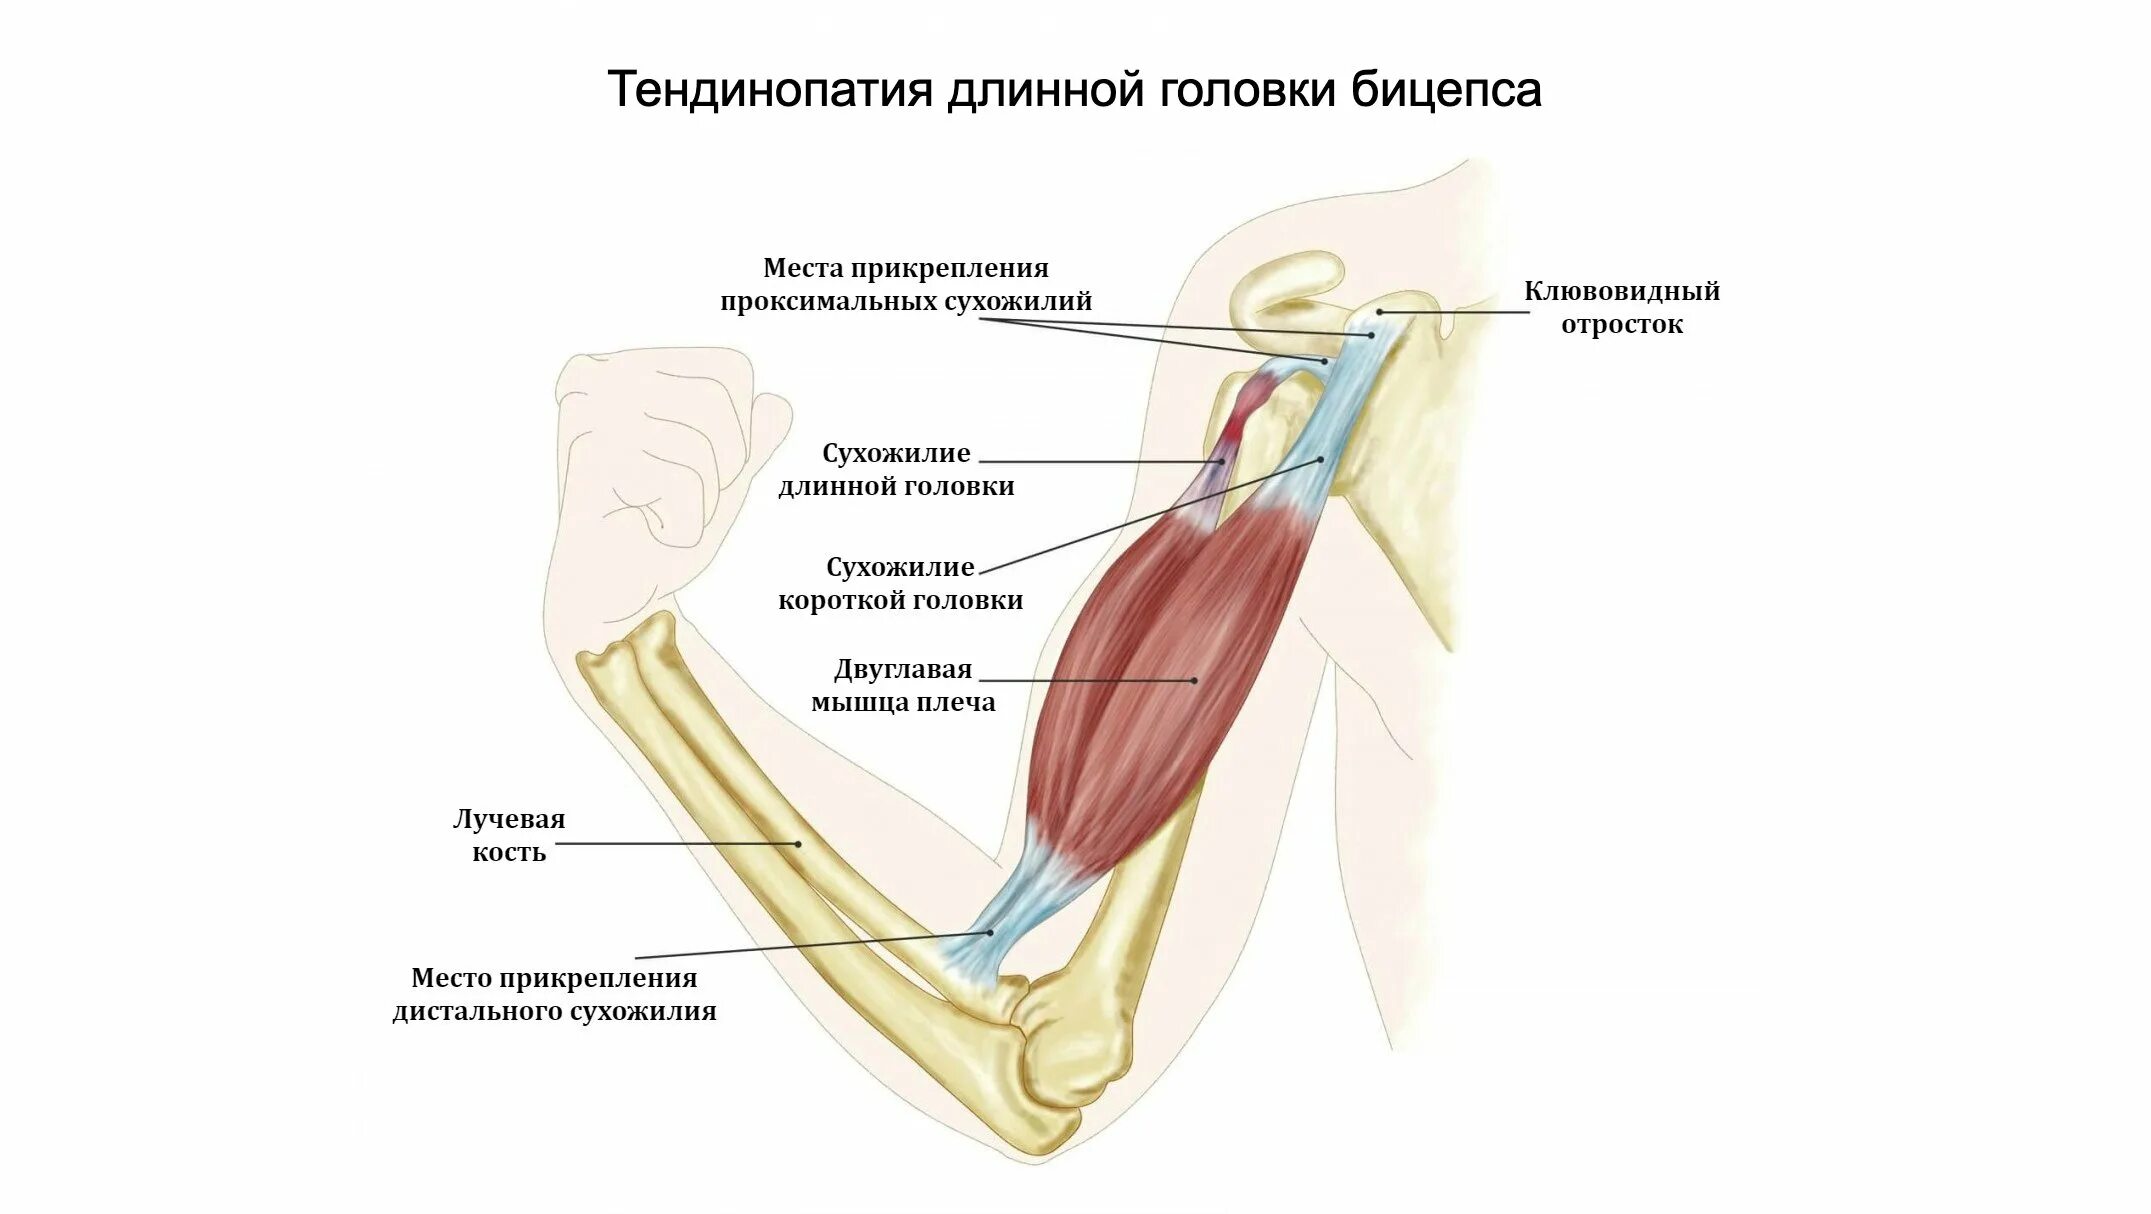 К чему крепится бицепс. Анатомия сухожилия двуглавой мышцы. Сухожилие длинной головки двуглавой мышцы. Сухожилие двуглавой мышцы плеча. Разрыв сухожилия головки двуглавой мышцы плеча.